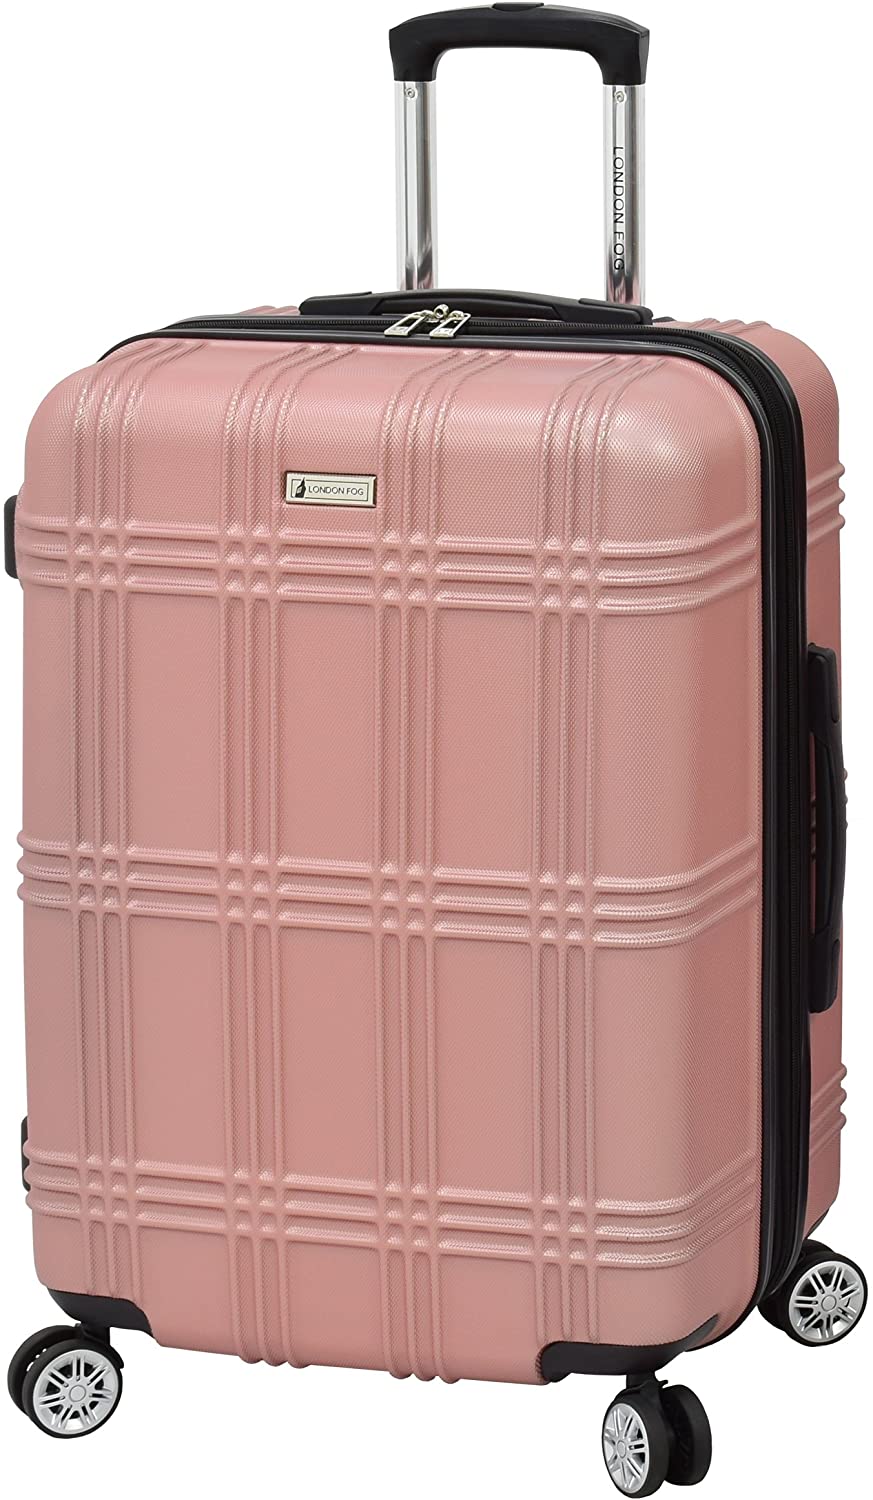 london fog suitcase pink hardshell weybridge